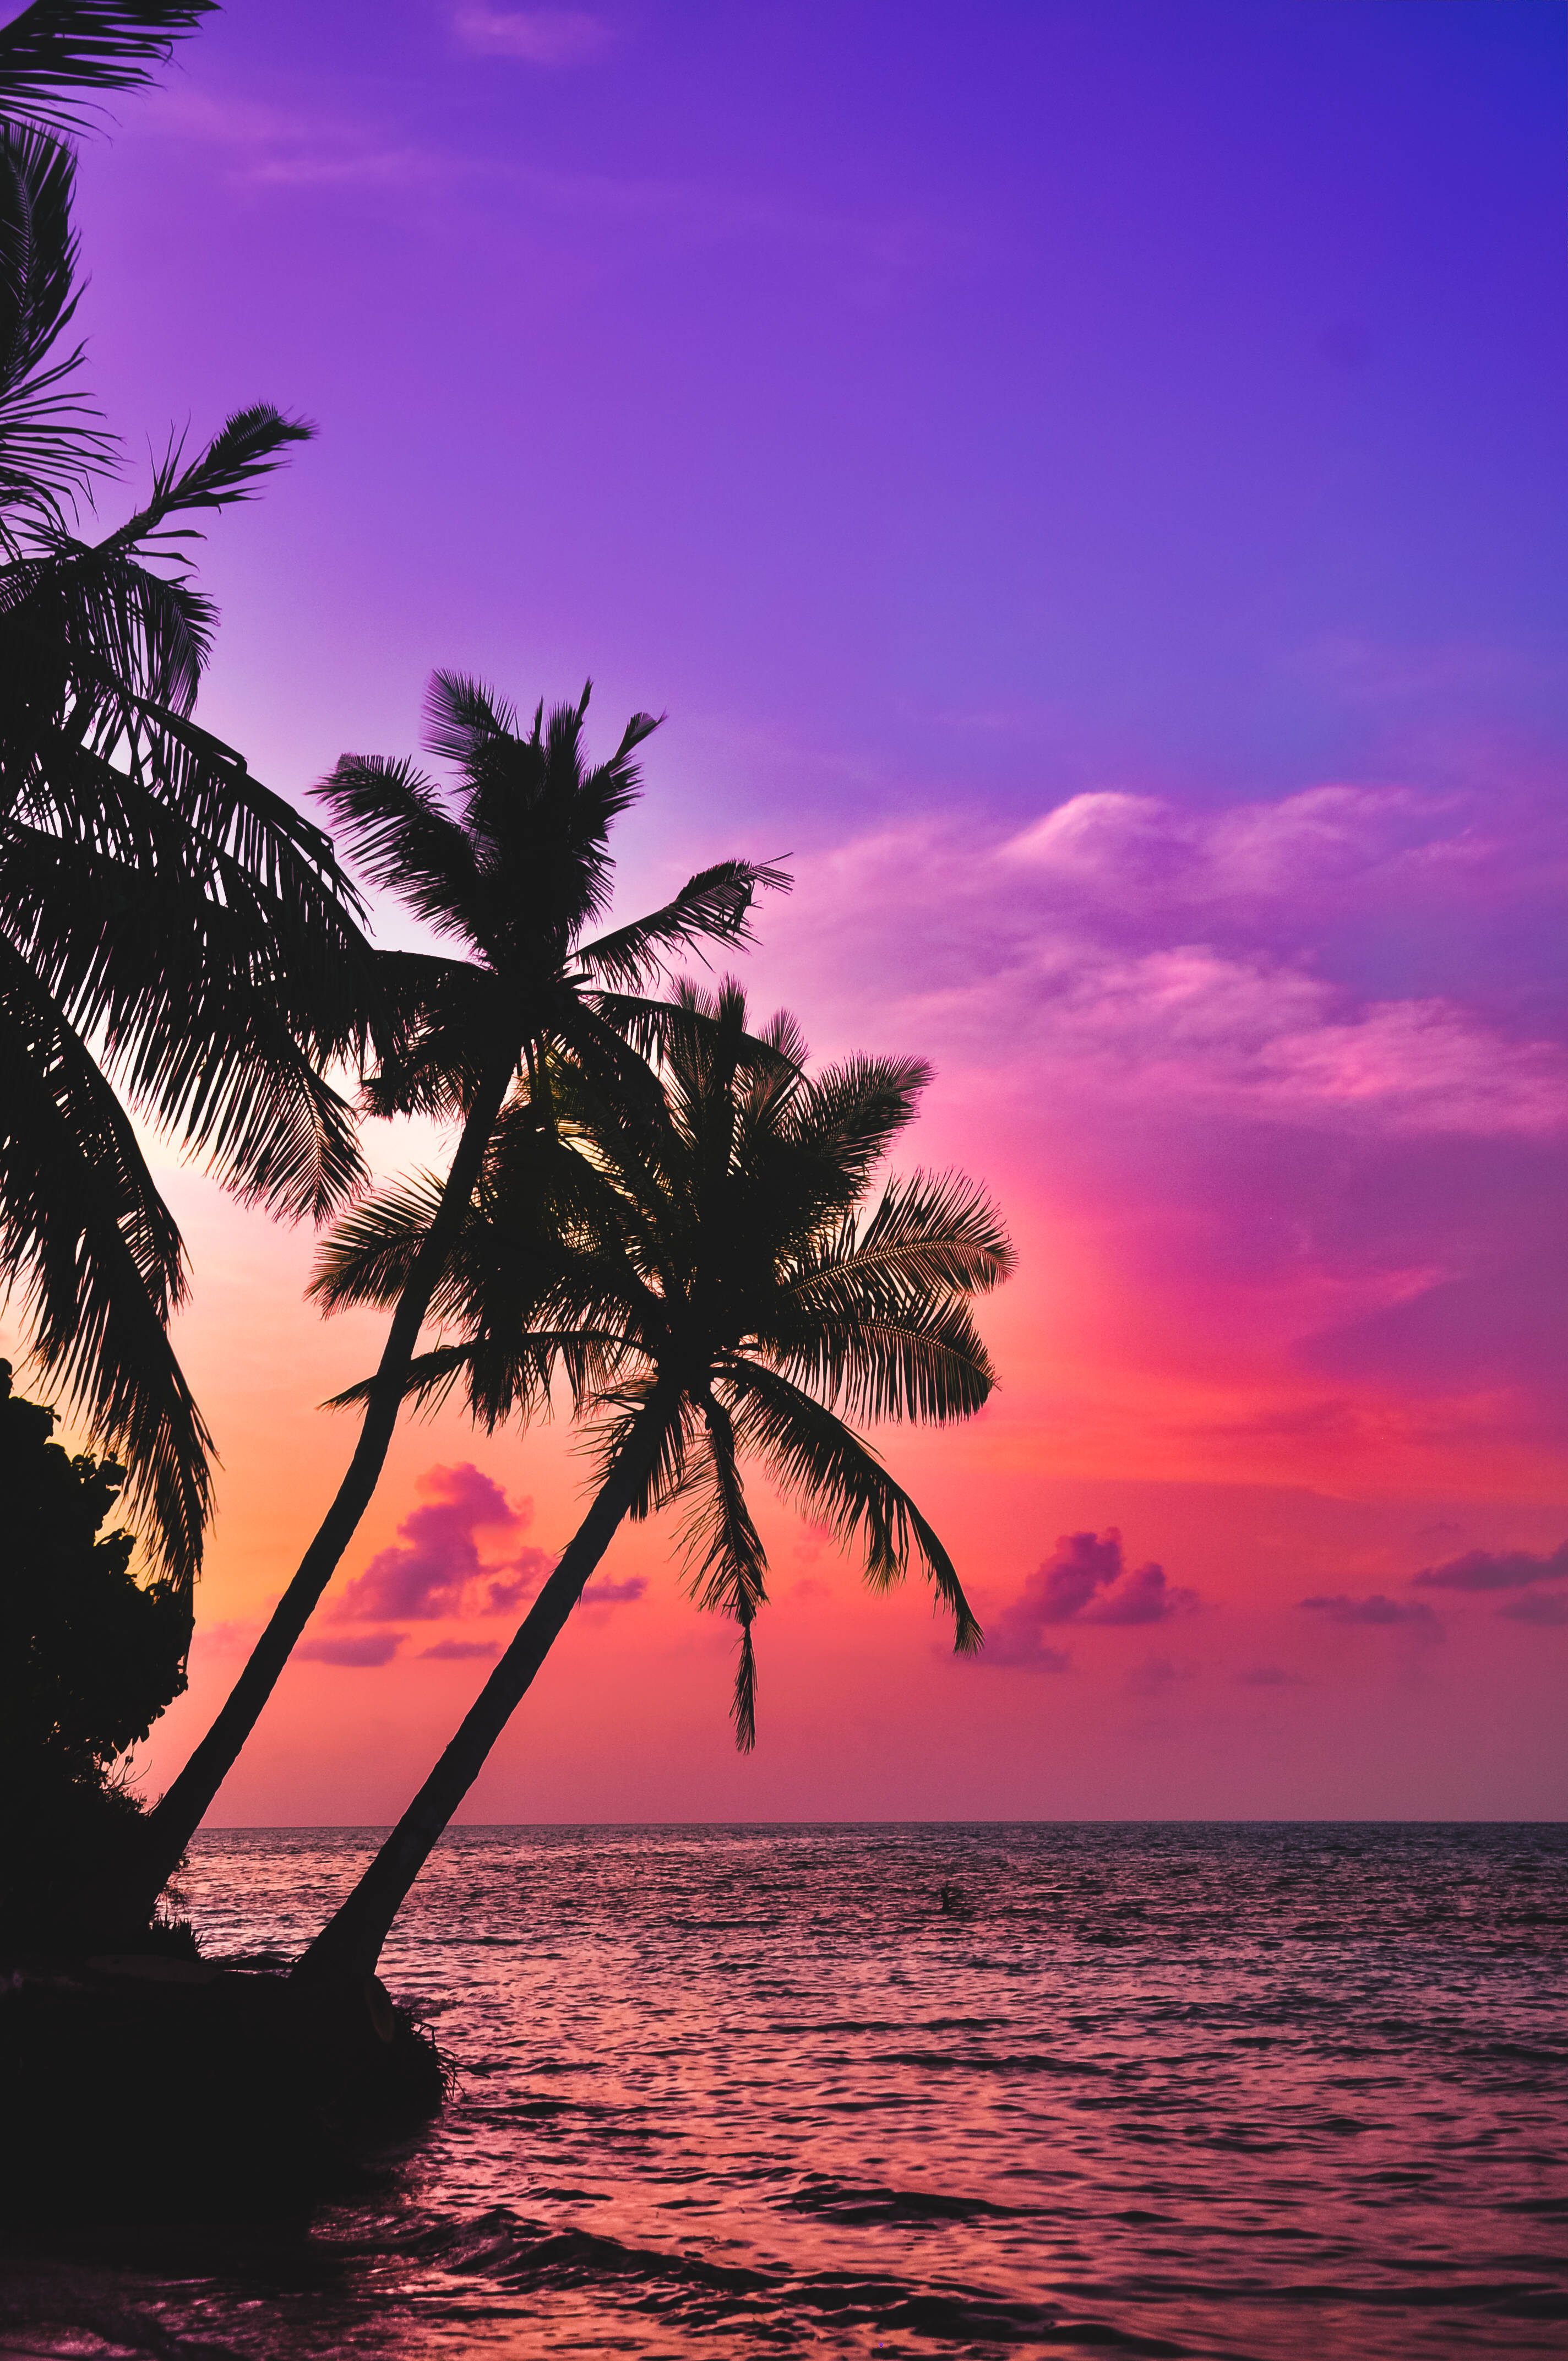 Sunset Beach Wallpapers  Top 20 Best Sunset Beach Wallpapers Download